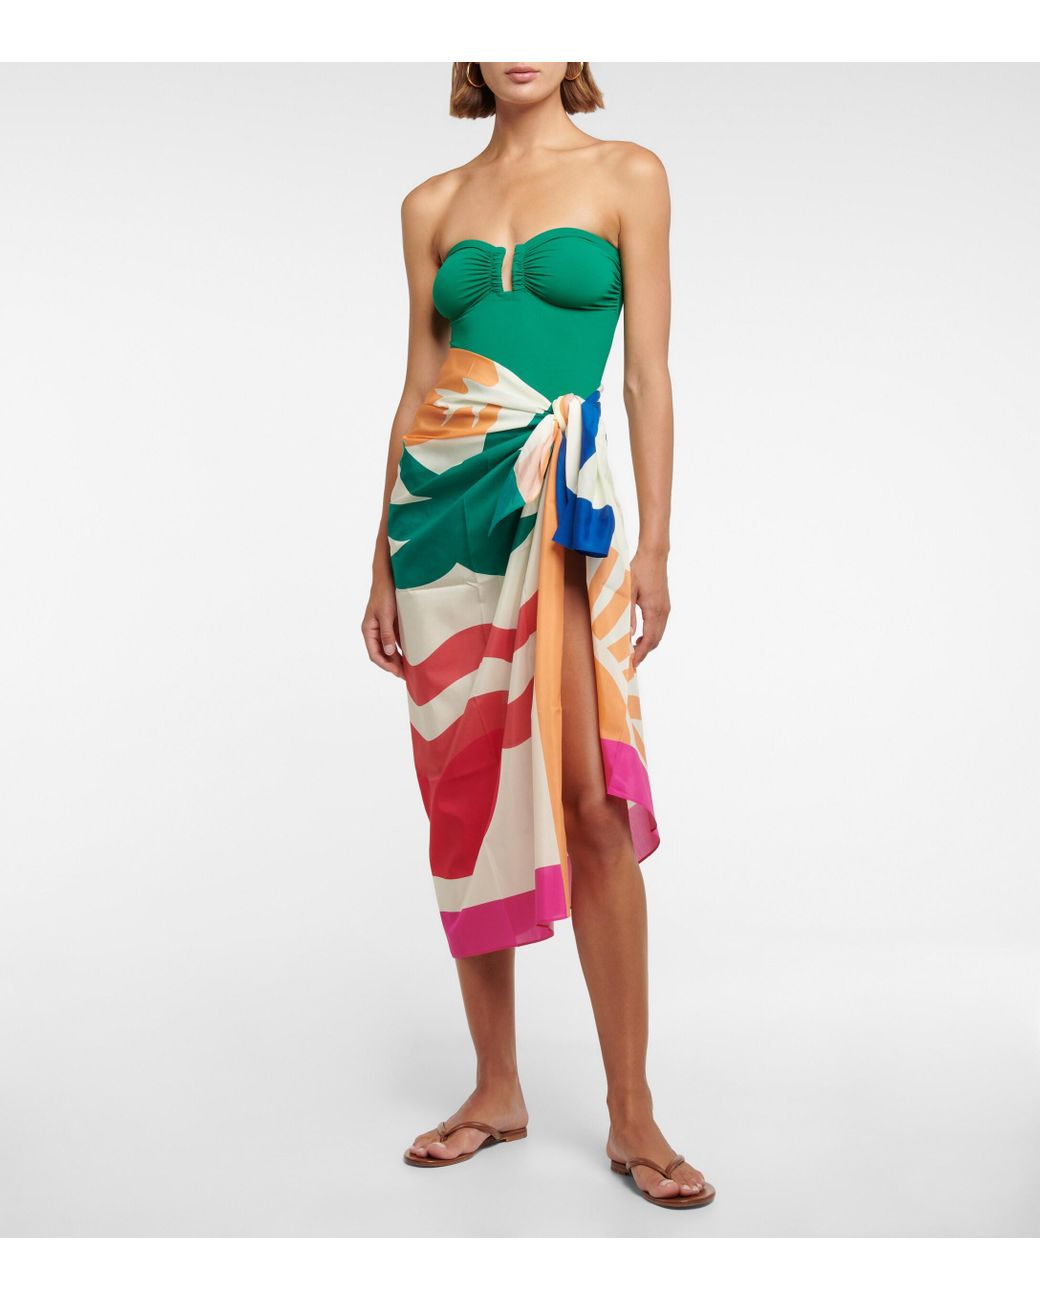 Femme Vêtements Articles de plage et maillots de bain Paréos Pareo Splendide imprime en coton et soie Coton Eres 